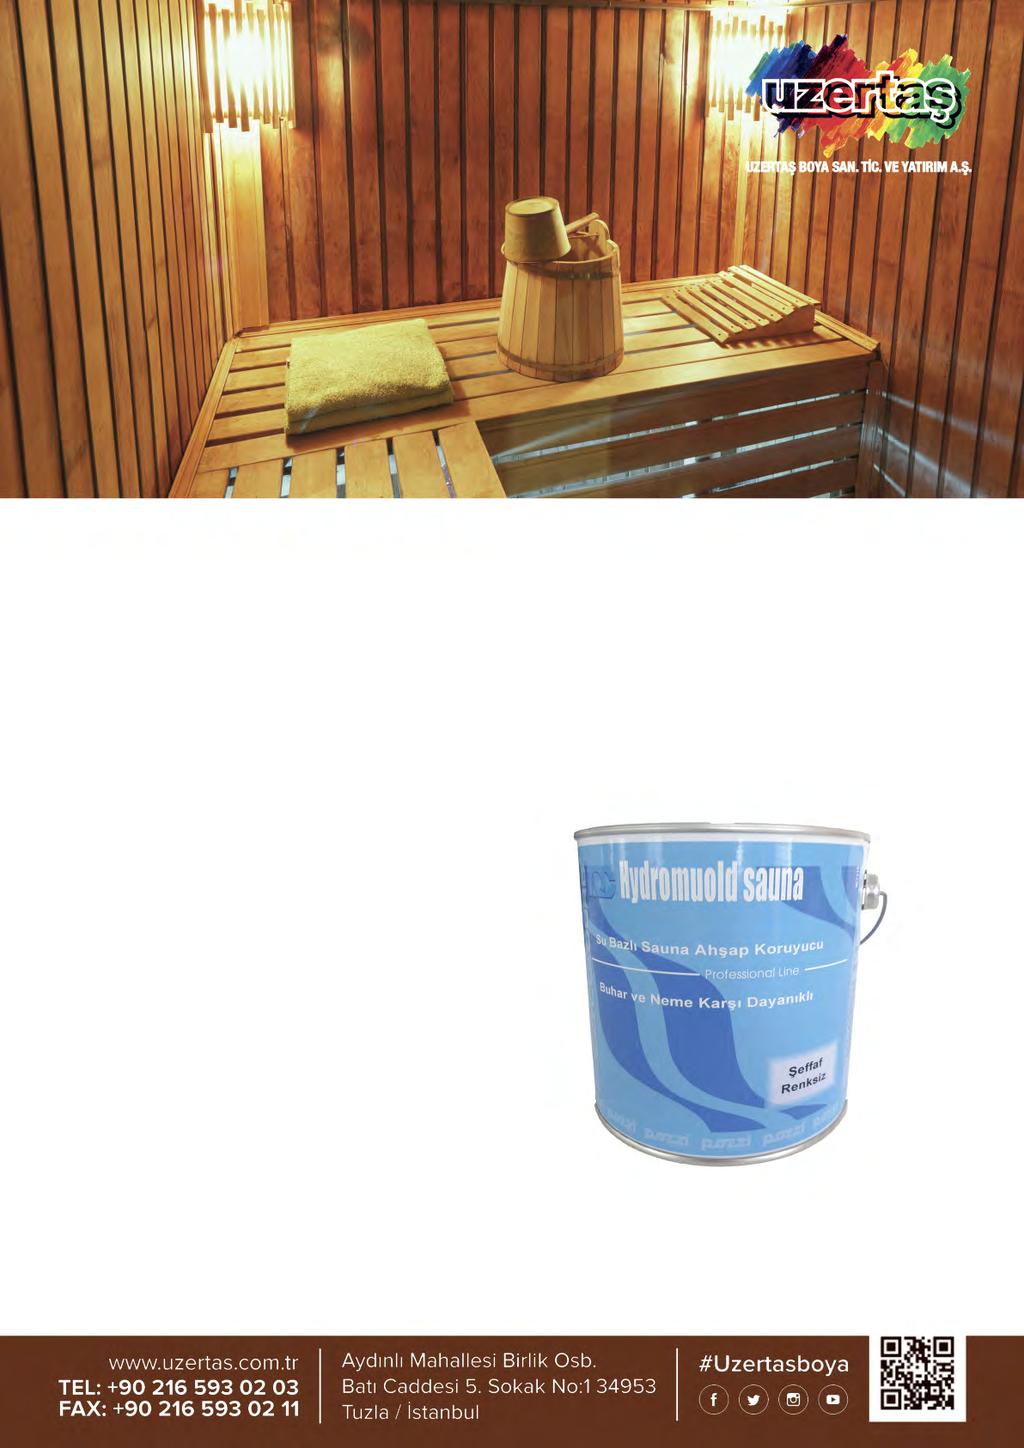 Hydromould Sauna, tüm iç ve dış mekan yüksek nemli ortamlardaki ahşap ve ahşap elyaf levhalarda kullanılabilen su bazlı, uzun etkili koruyucudur.